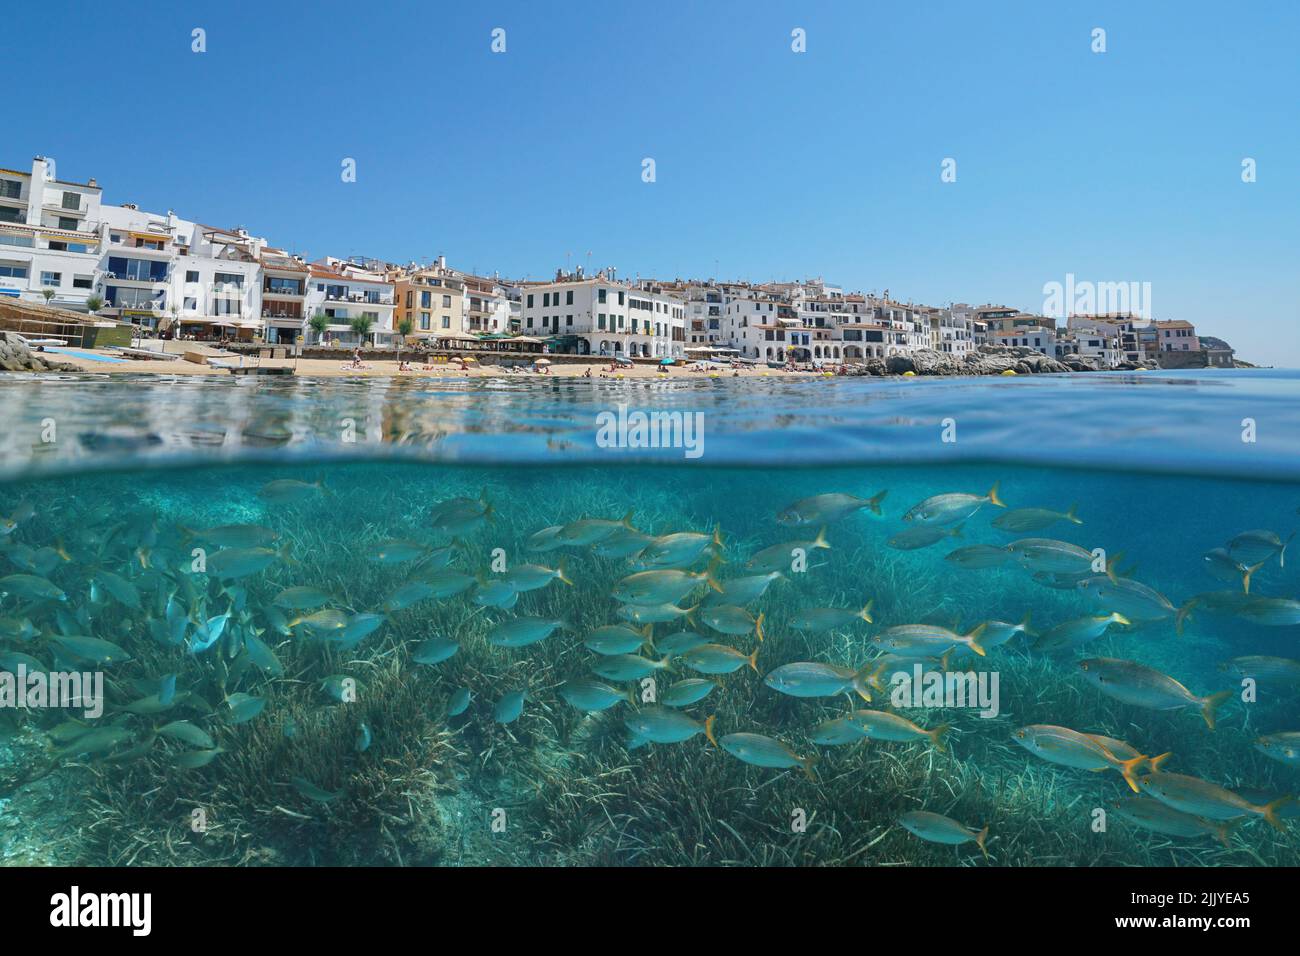 Ville espagnole sur la côte méditerranéenne avec poisson et mer sous-marine, Espagne, Costa Brava, Calella de Palafrugell, vue sur deux niveaux Banque D'Images